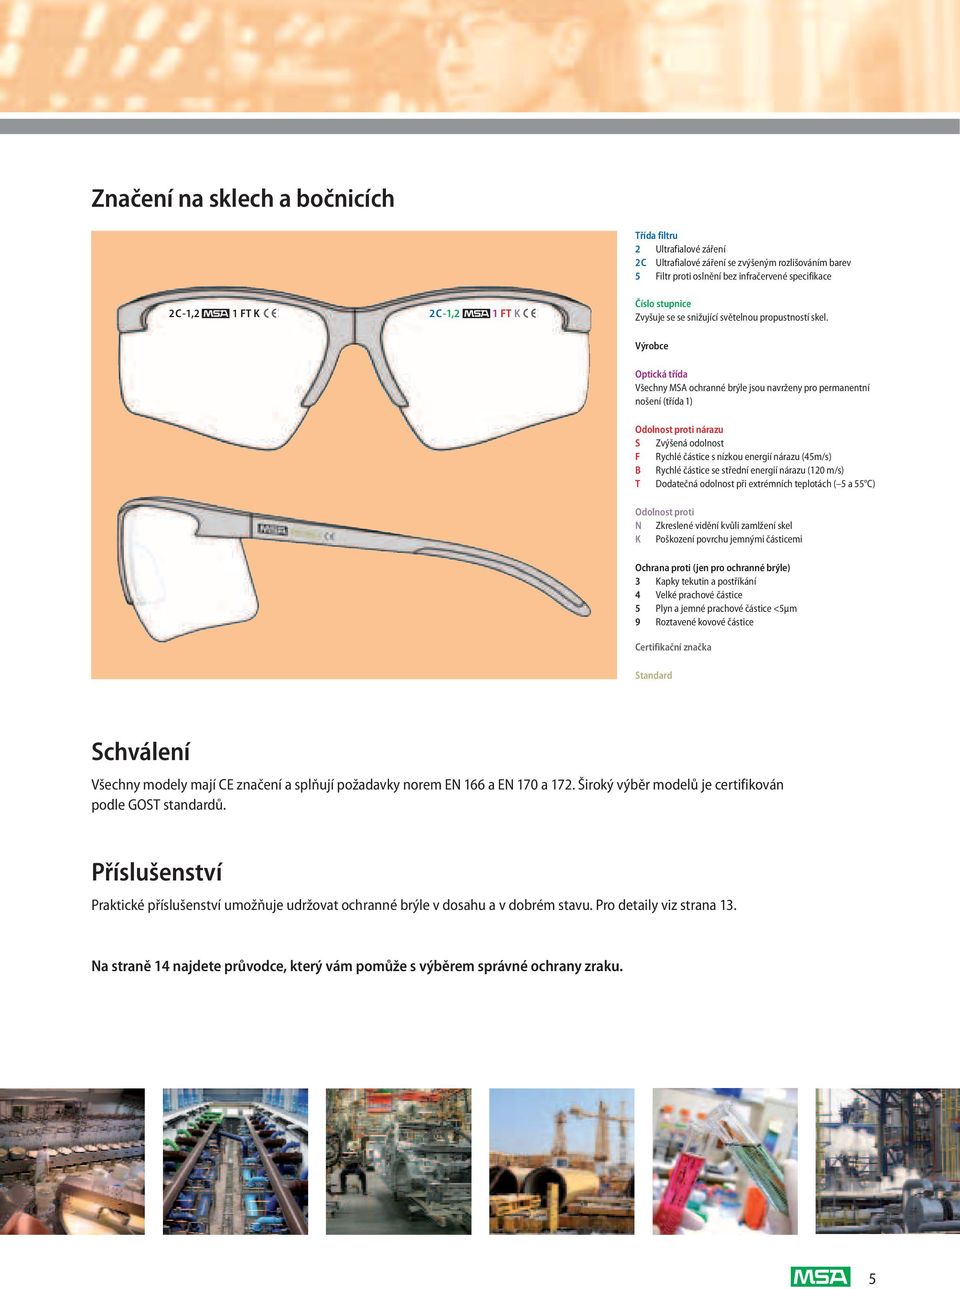 Výrobce Optická třída Všechny MSA ochranné brýle jsou navrženy pro permanentní nošení (třída1) Odolnost proti nárazu S Zvýšená odolnost F Rychlé částice s nízkou energií nárazu (45m/s) B Rychlé